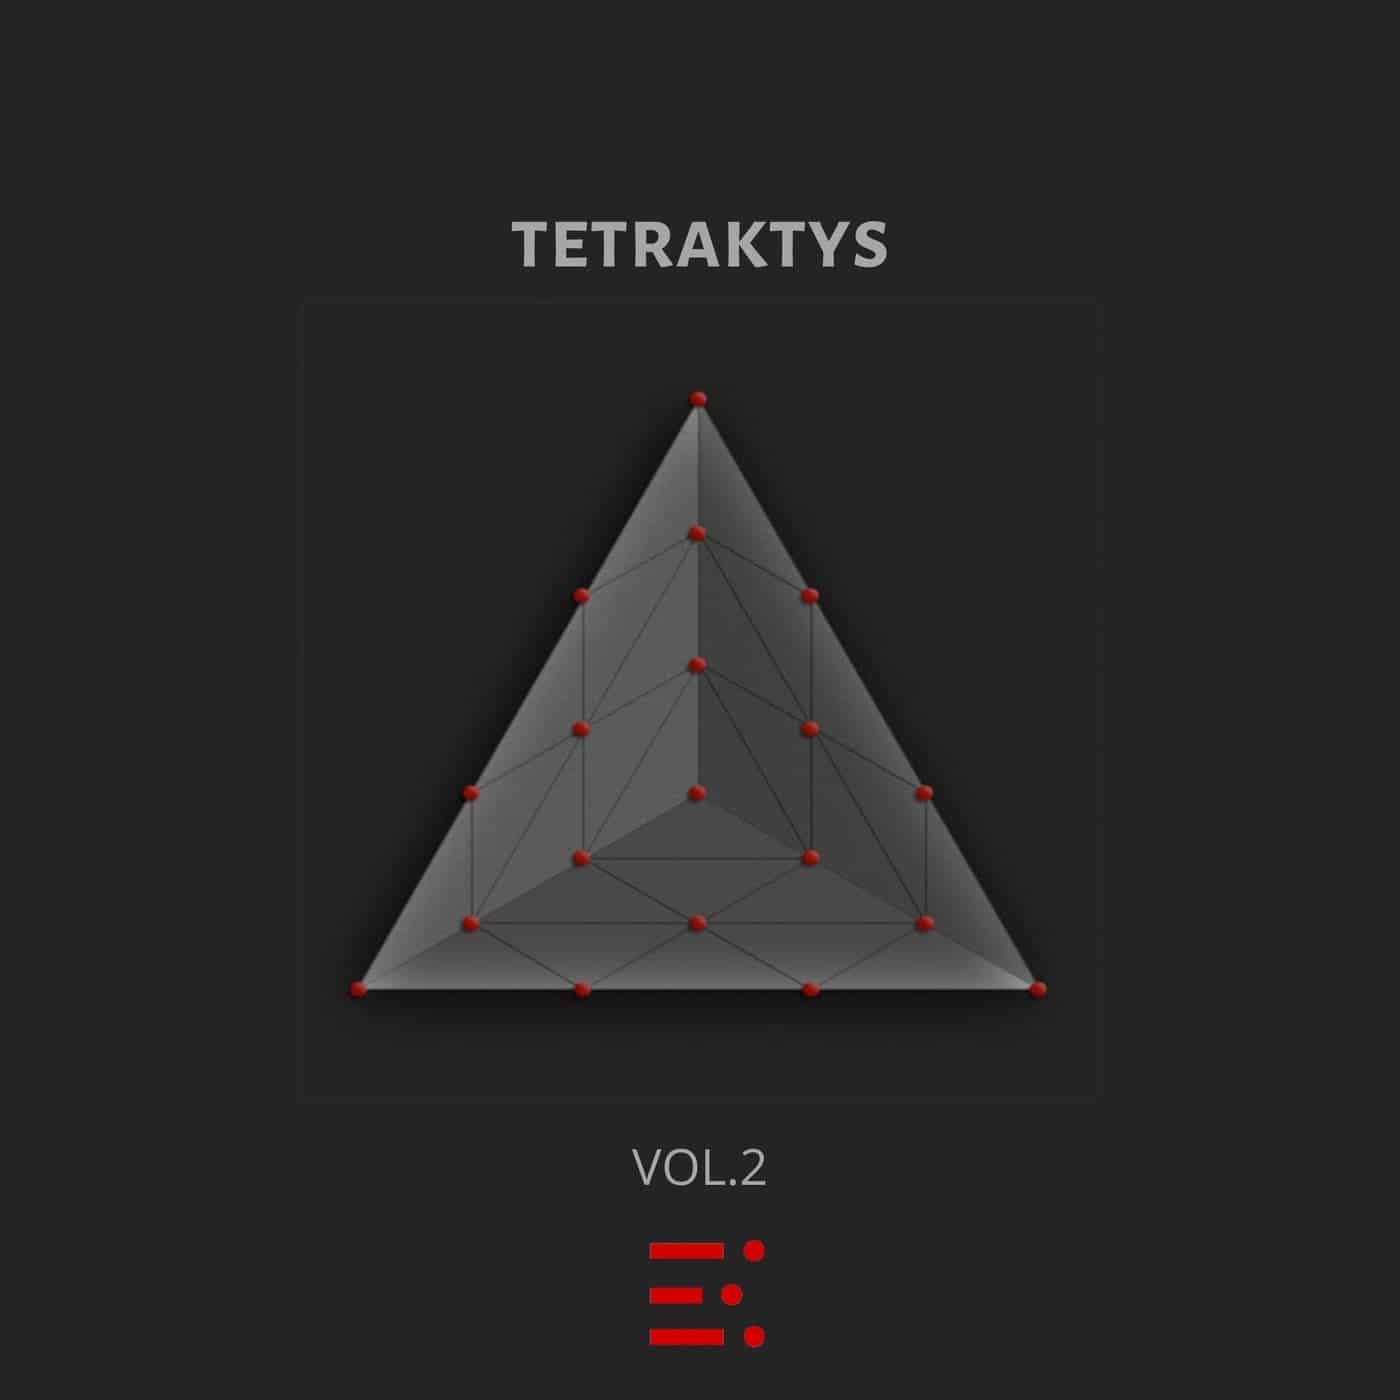 Download VA - Tetraktys, Vol. 2 on Electrobuzz